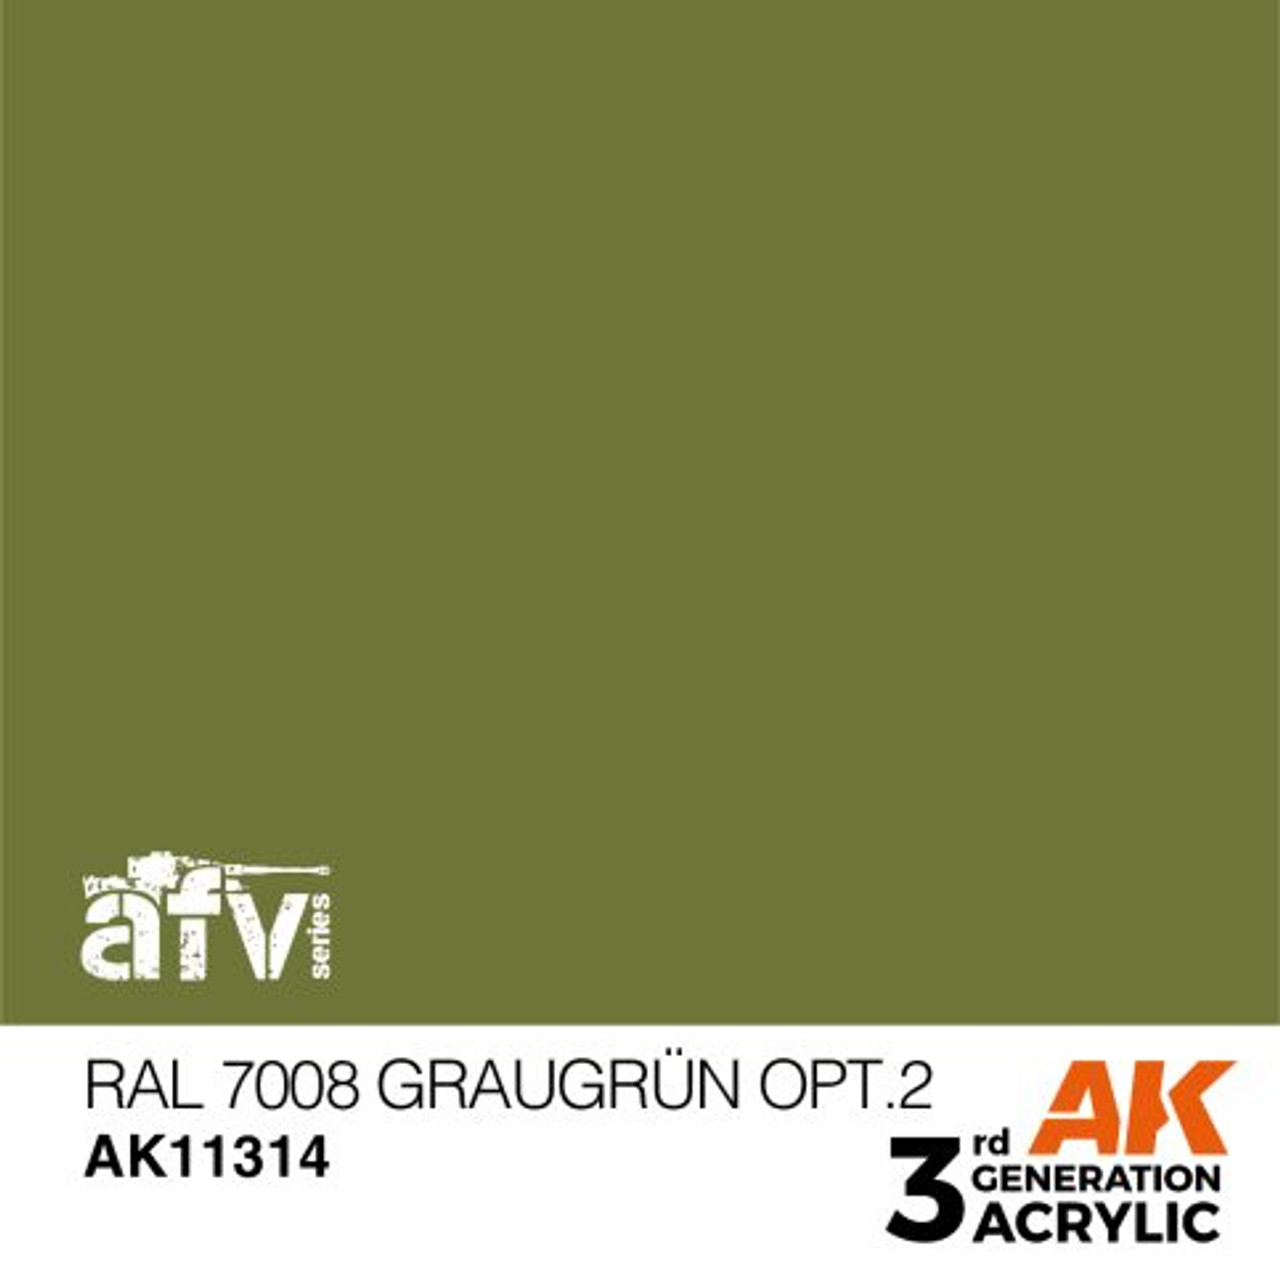 3G AFV 314 - RAL 7008 Graugrun Opt 2